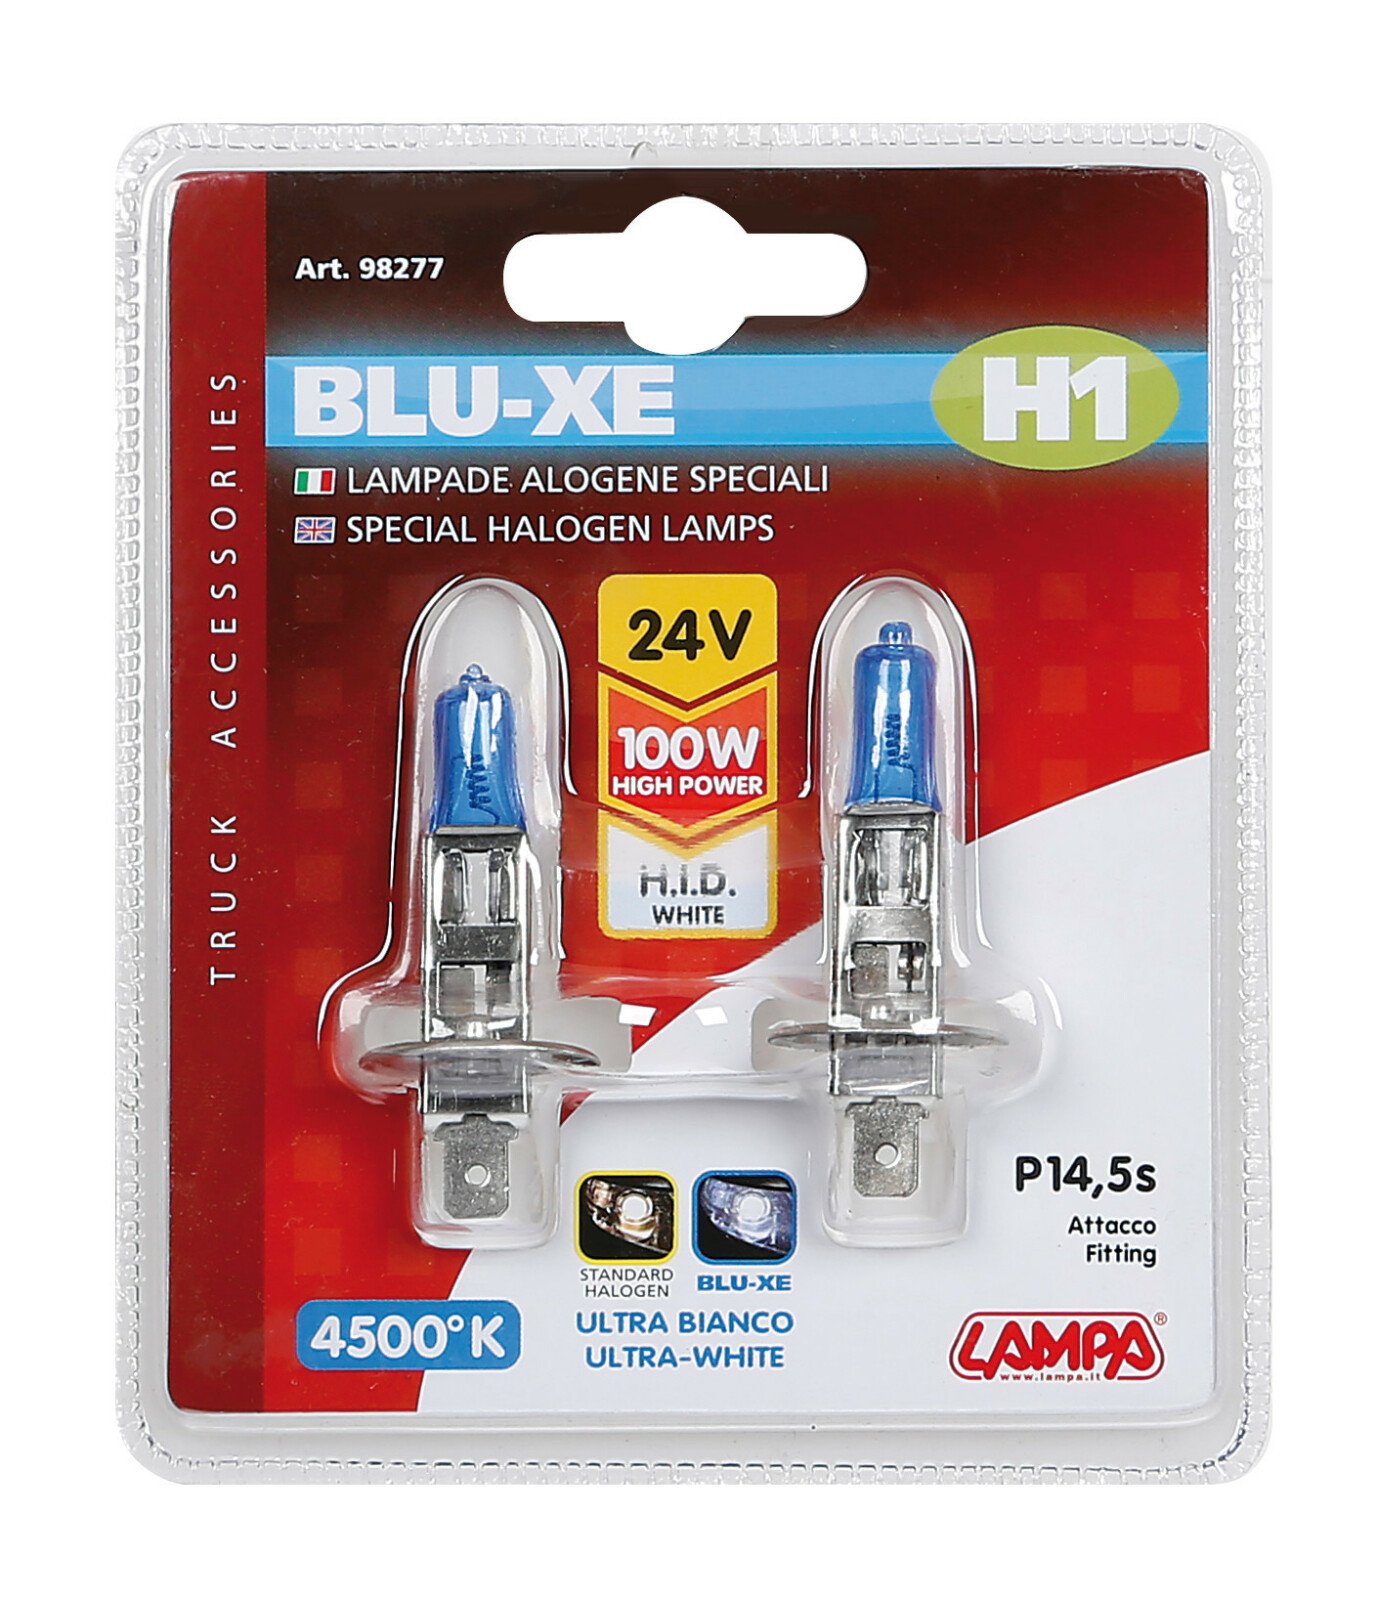 24V Blu-Xe halogen lamp - H1 - 100W - P14,5s - 2 pcs thumb